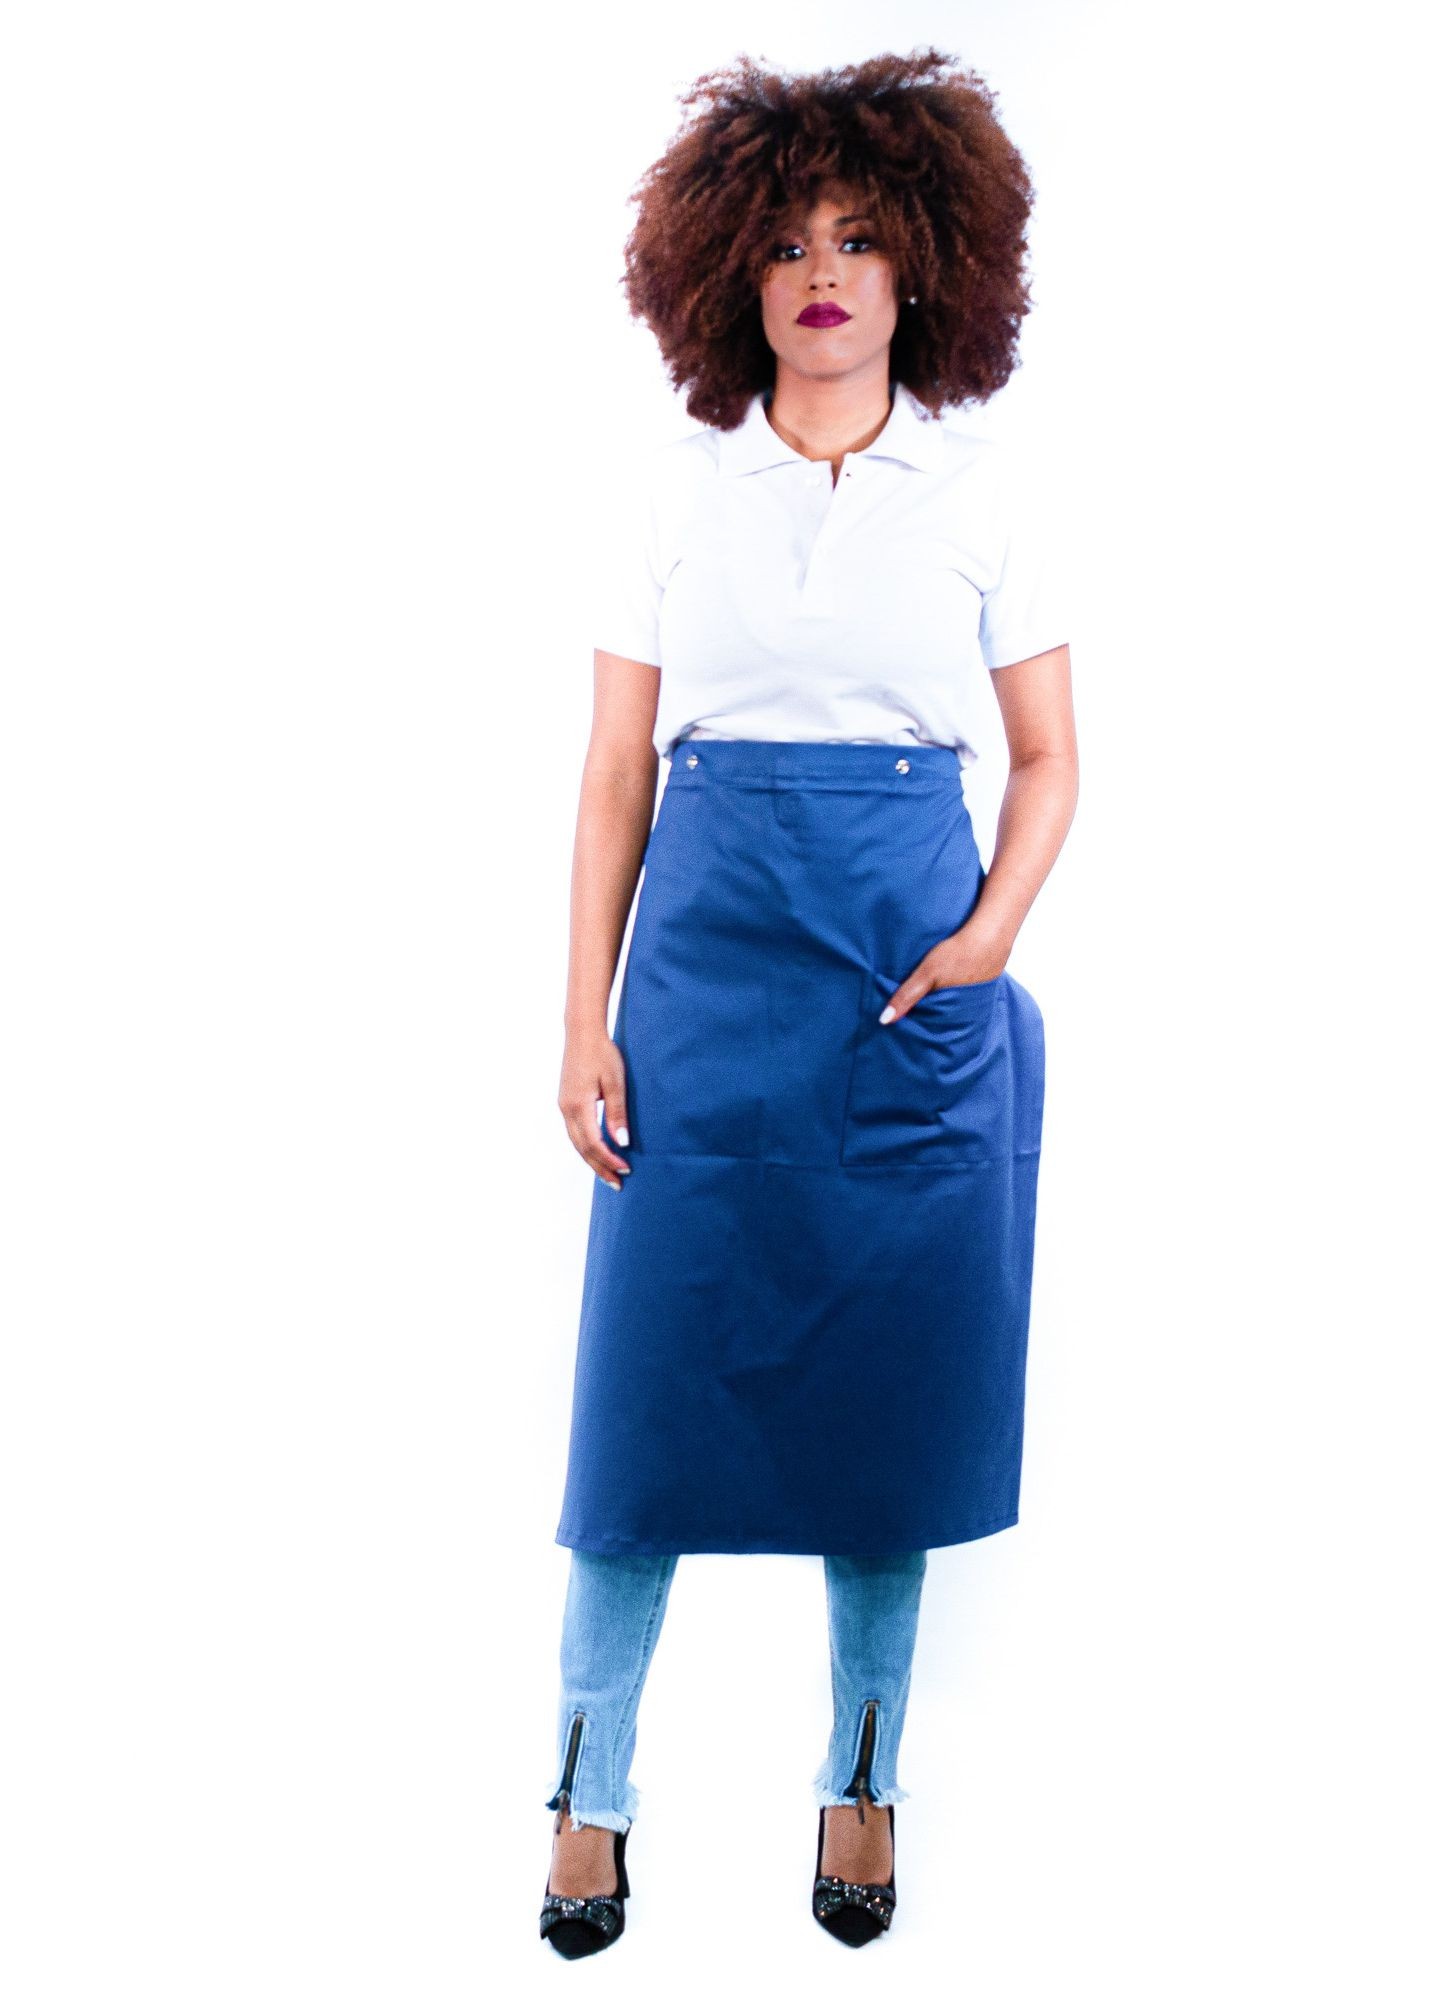 Antigo_Avental de Frente Feminino Sumaia Samia, 2 em 1 com peito removível Para Profissionais da Cozinha - Azul Índigo